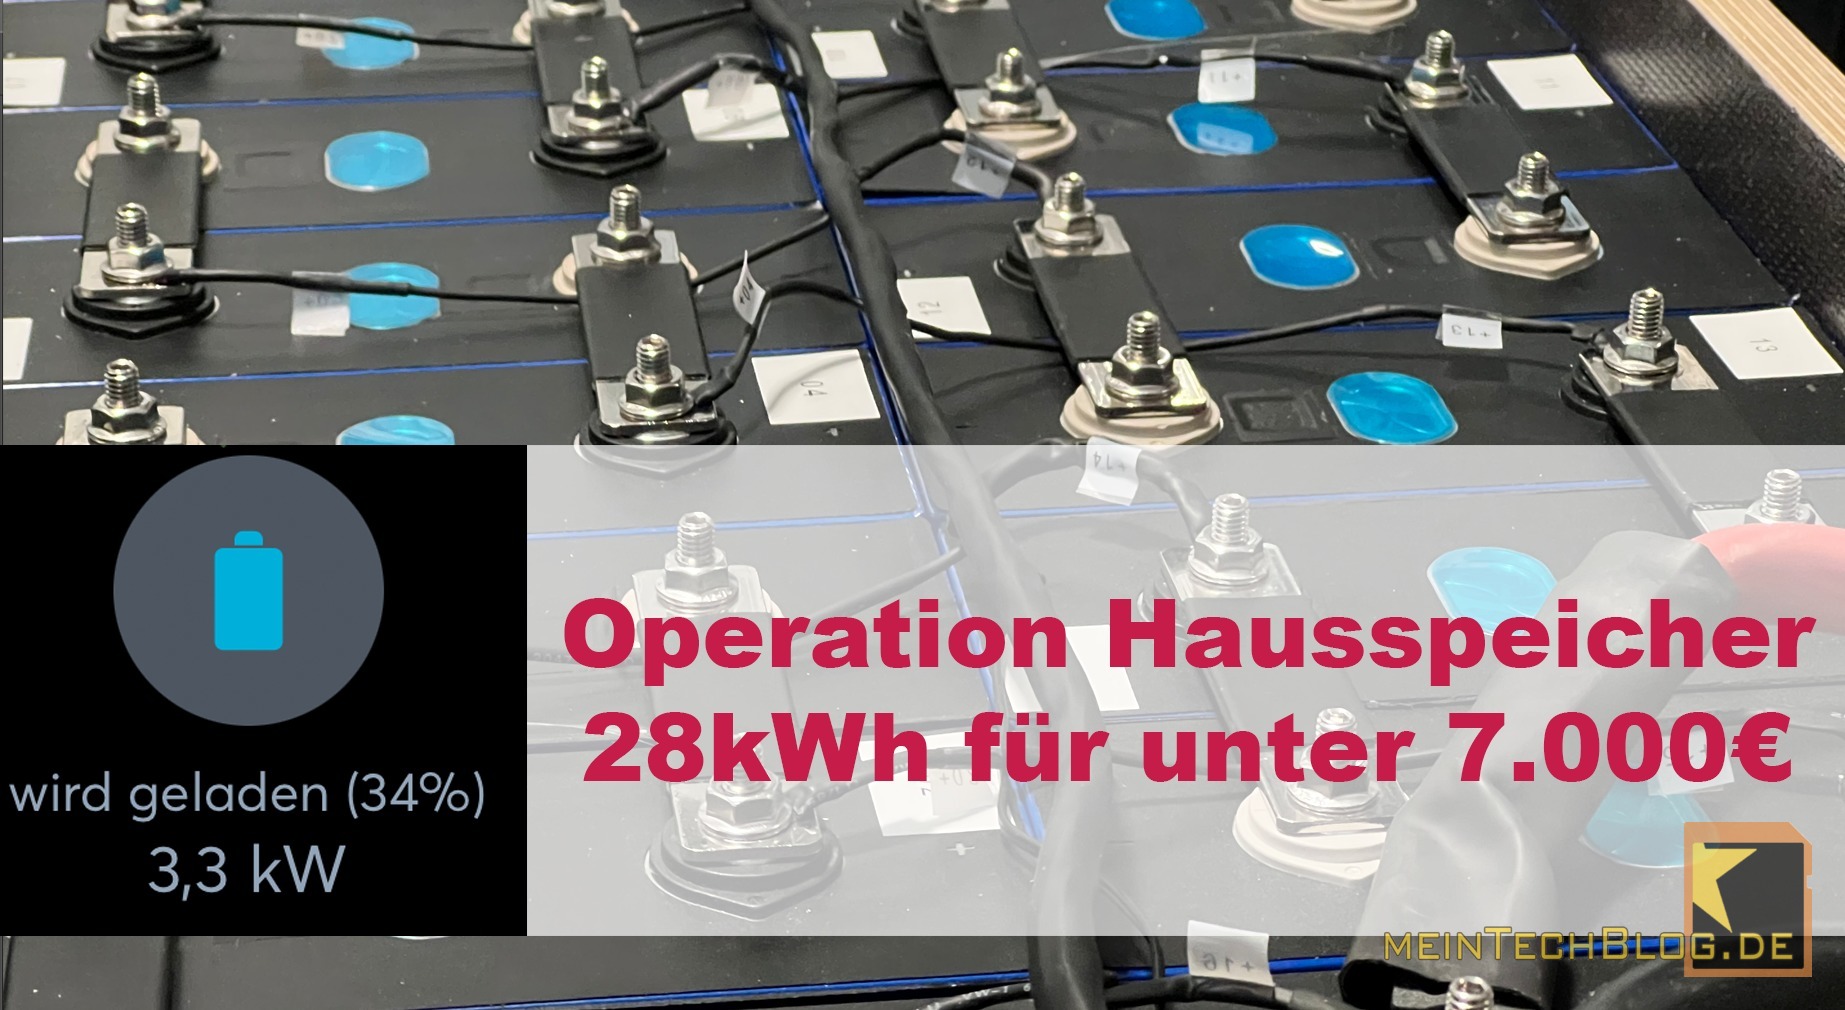 Operation Hausspeicher - 28kWh für unter 7.000€ 